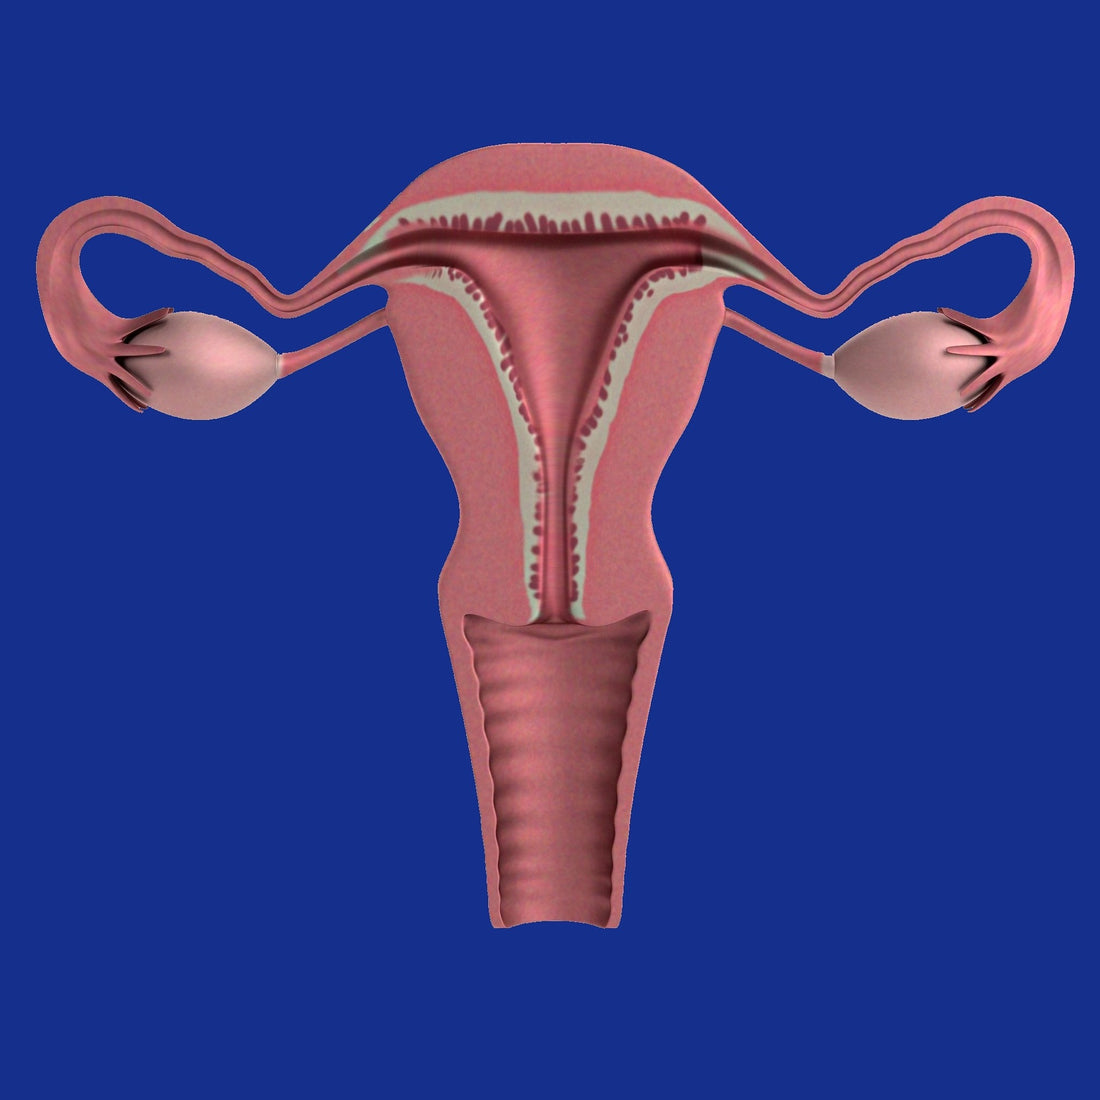 ovario-poliquistico